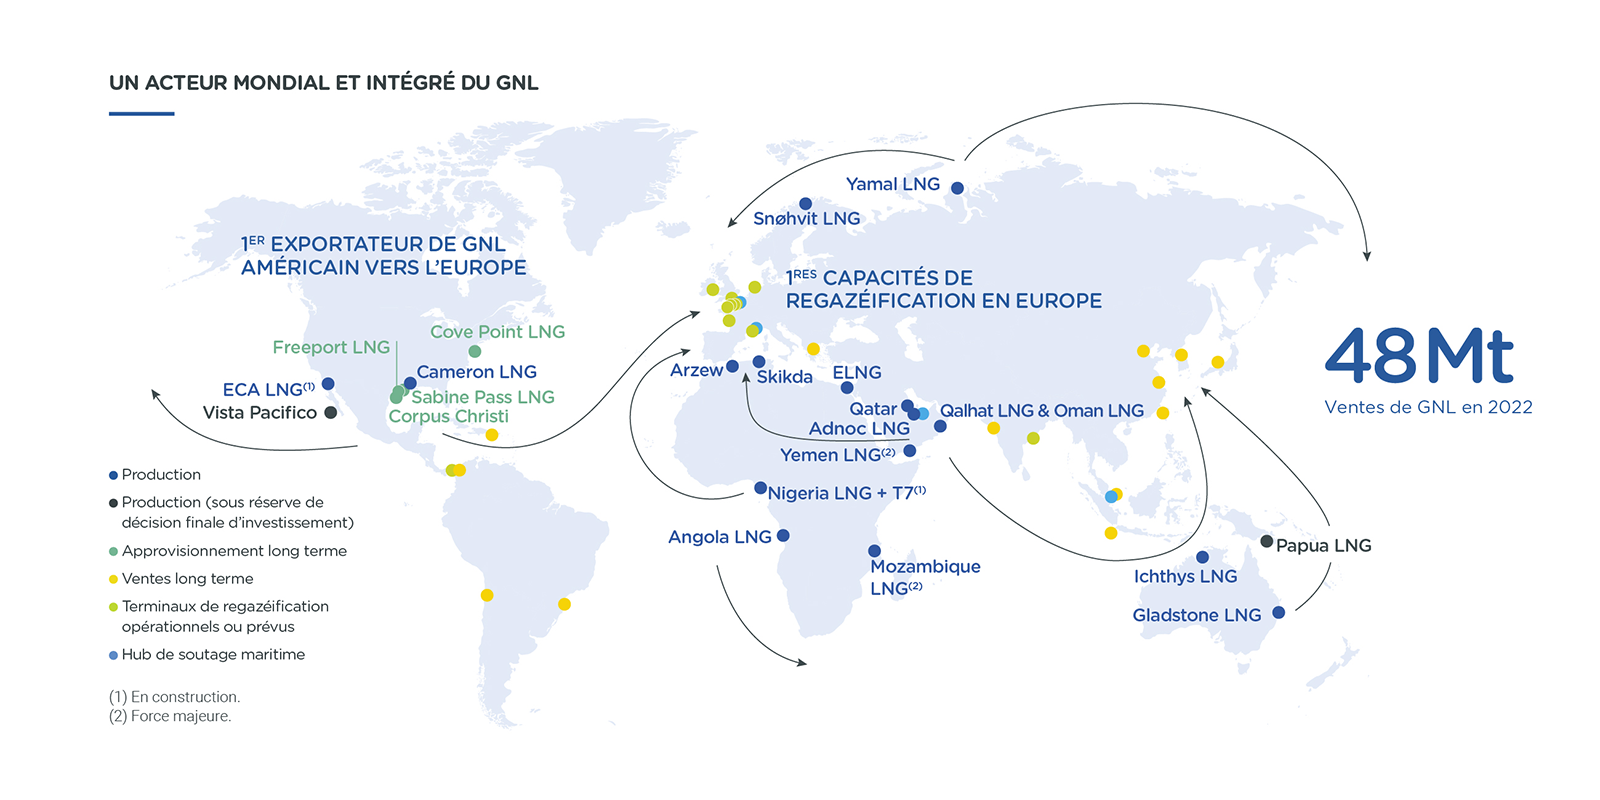 Infographie : "Un acteur mondial et intégré du GNL"